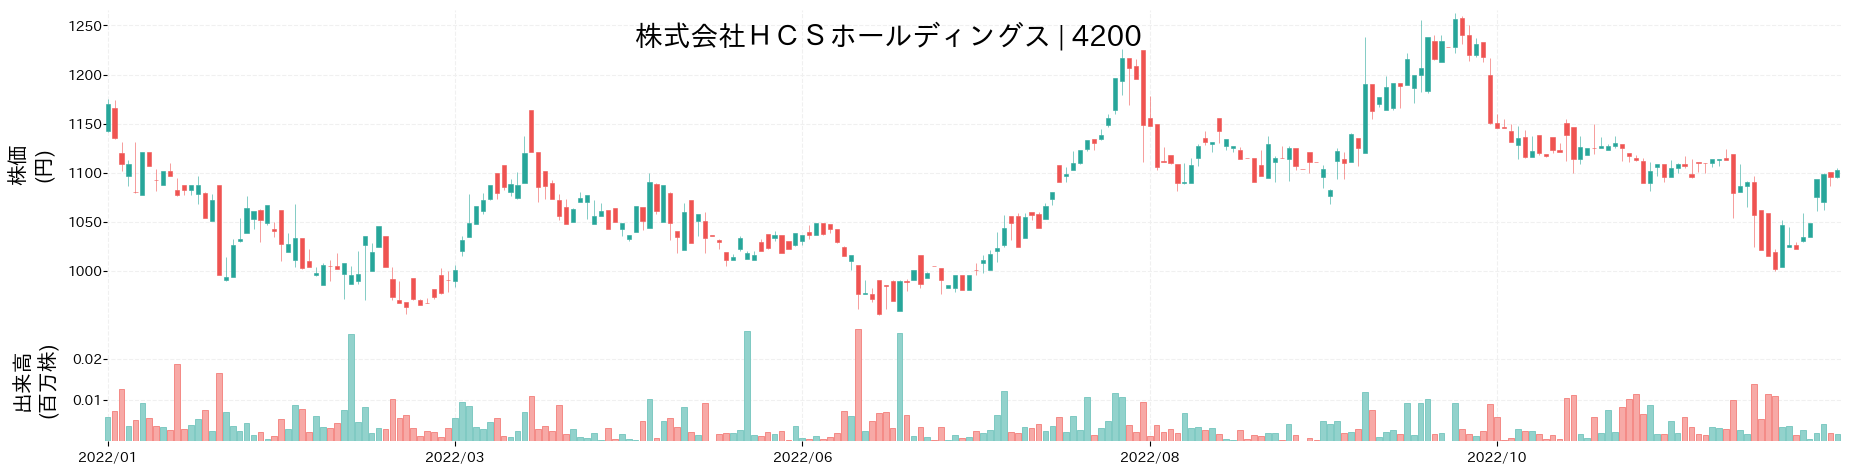 HCSホールディングスの株価推移(2022)